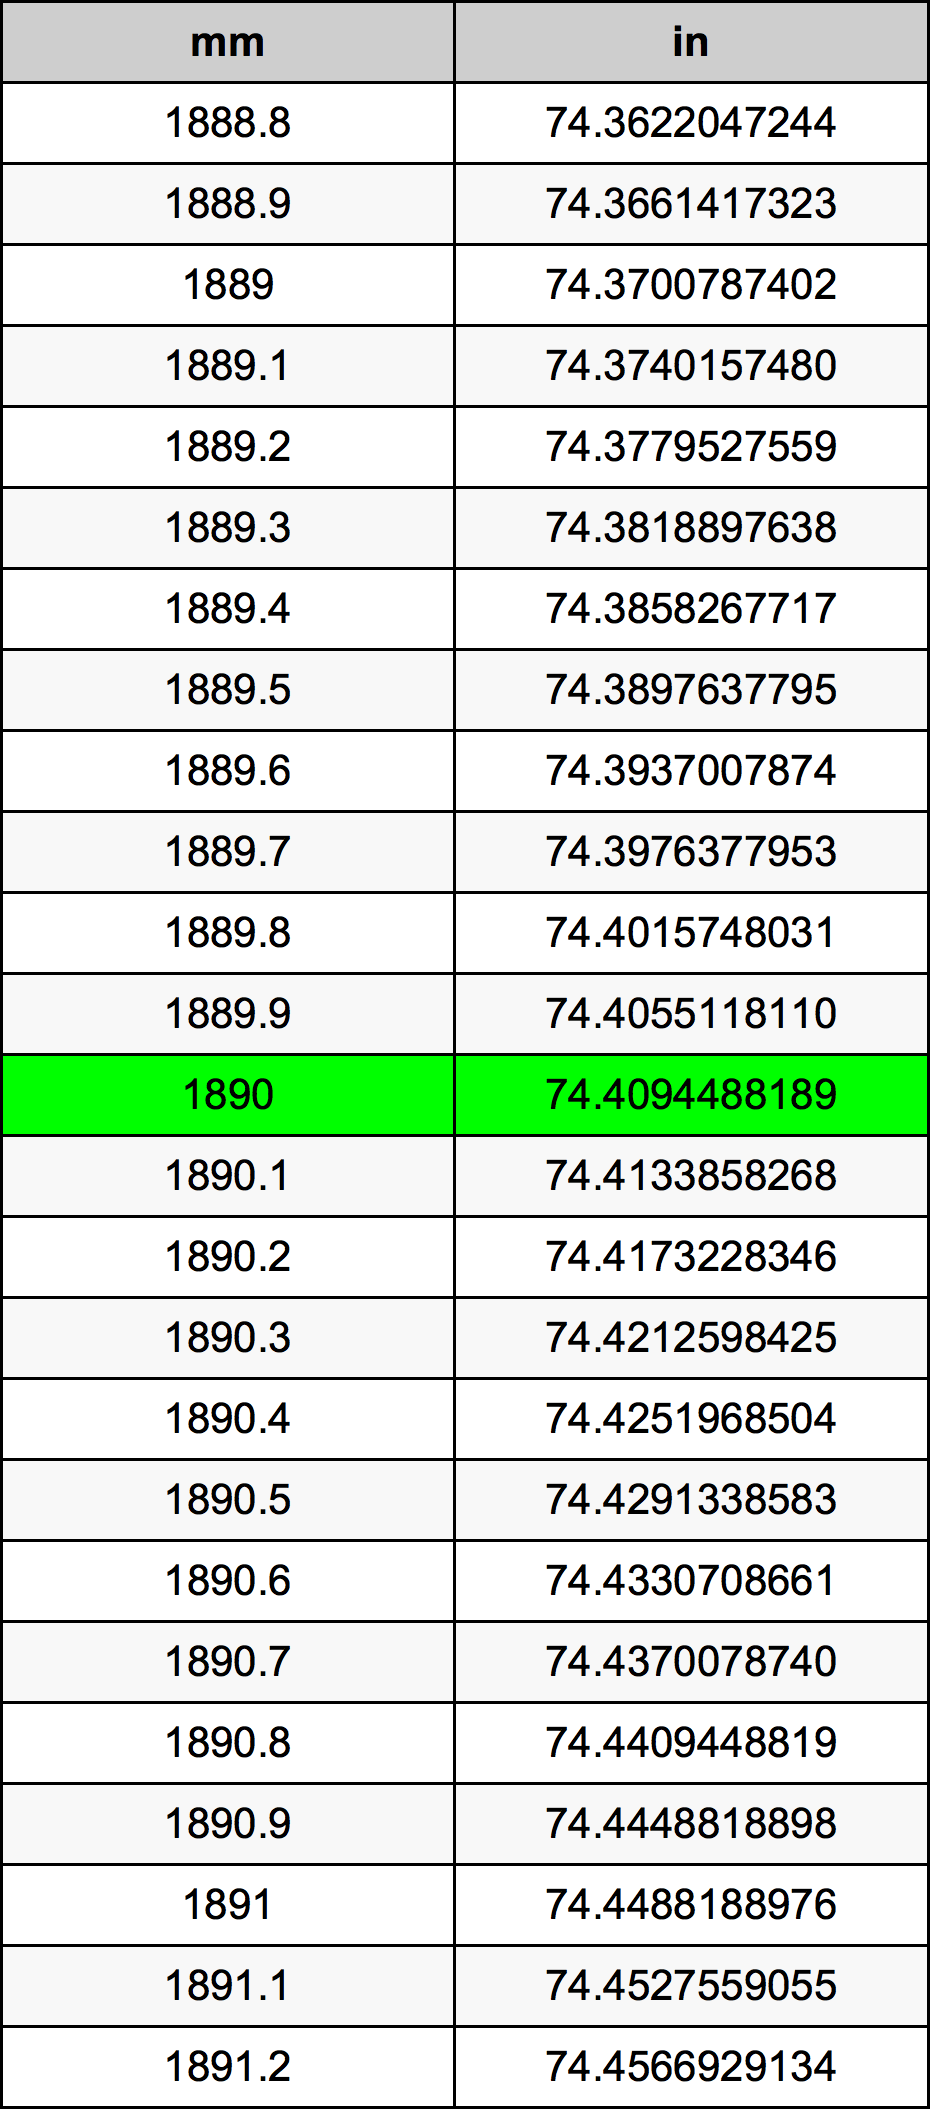 1890ミリメートル換算表